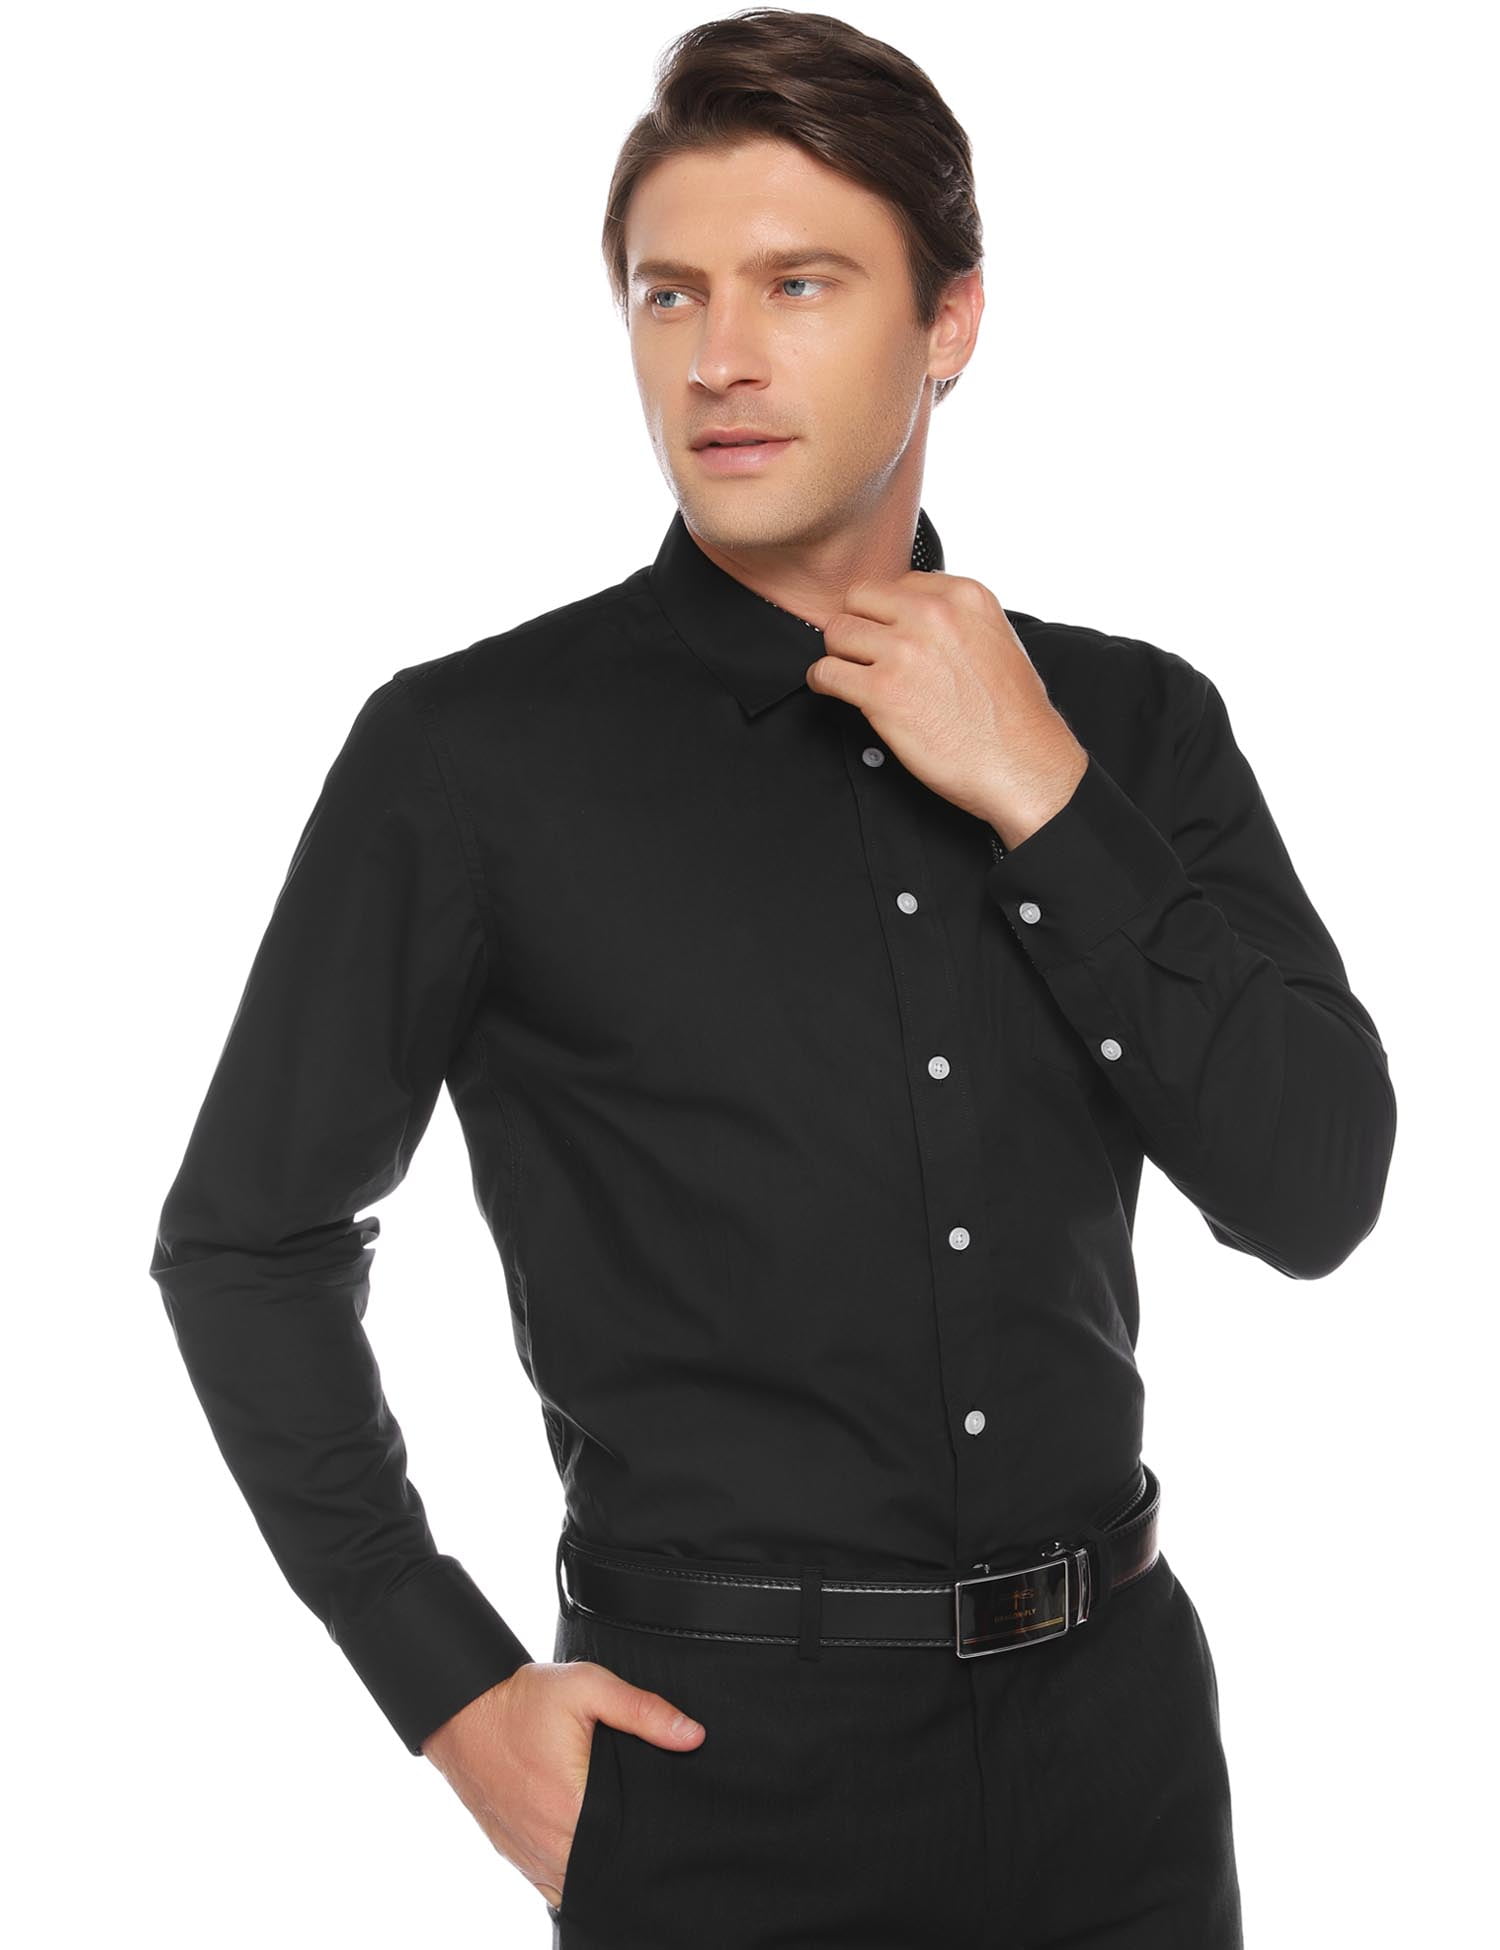 Uniexcosm Men Dress Shirts Button Down Long Sleeve Business Shirt ...